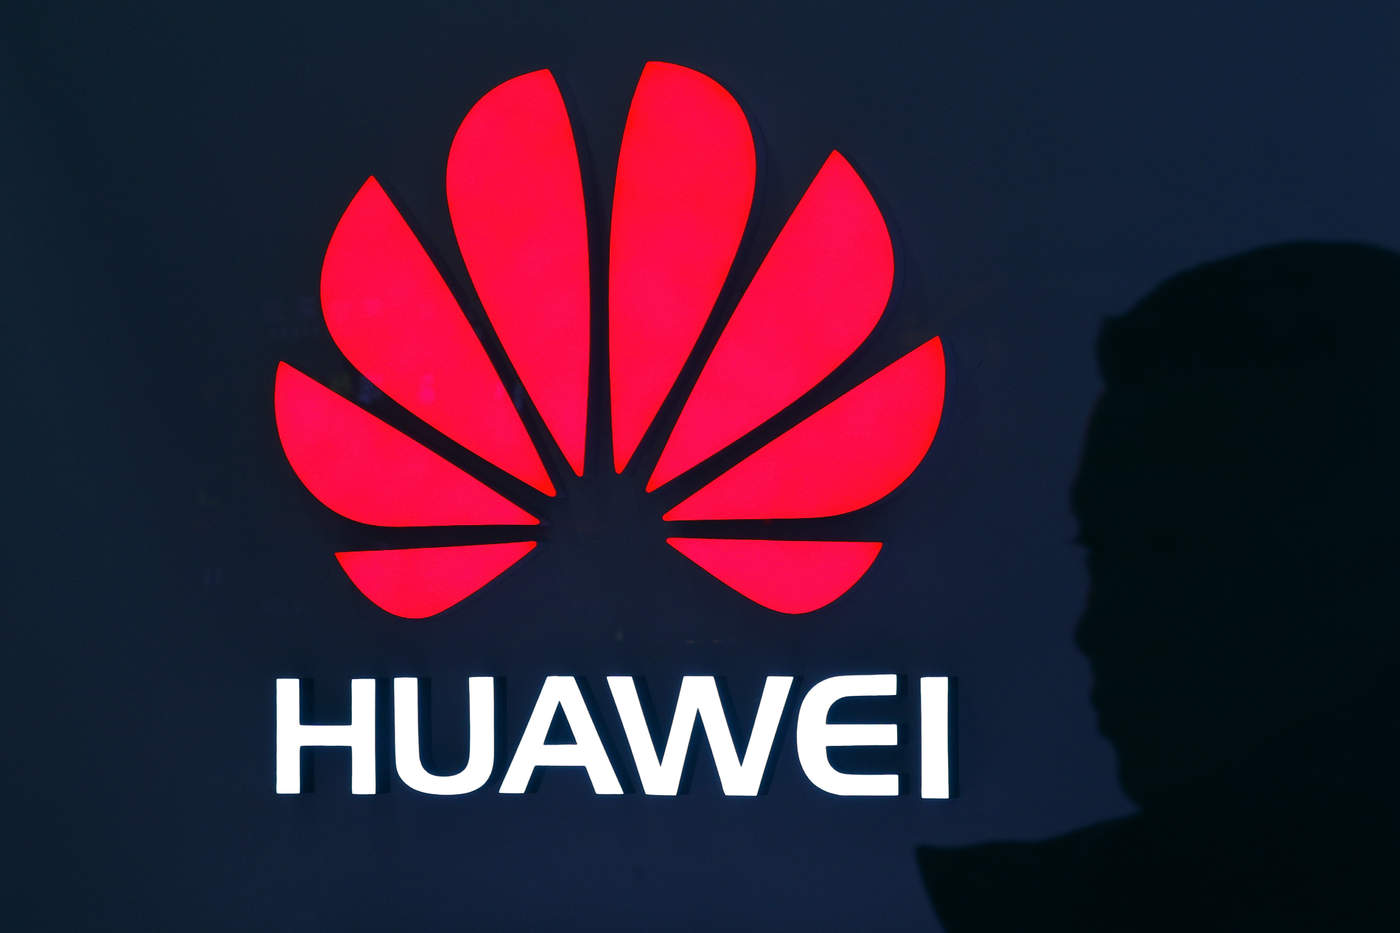 'Esta prohibición no solo es ilegal, sino que también restringe a Huawei de participar en una competencia justa y, en última instancia, perjudica a los consumidores estadounidenses', afirmó el presidente rotativo de Huawei, Guo Ping, en un comunicado. (ARCHIVO)